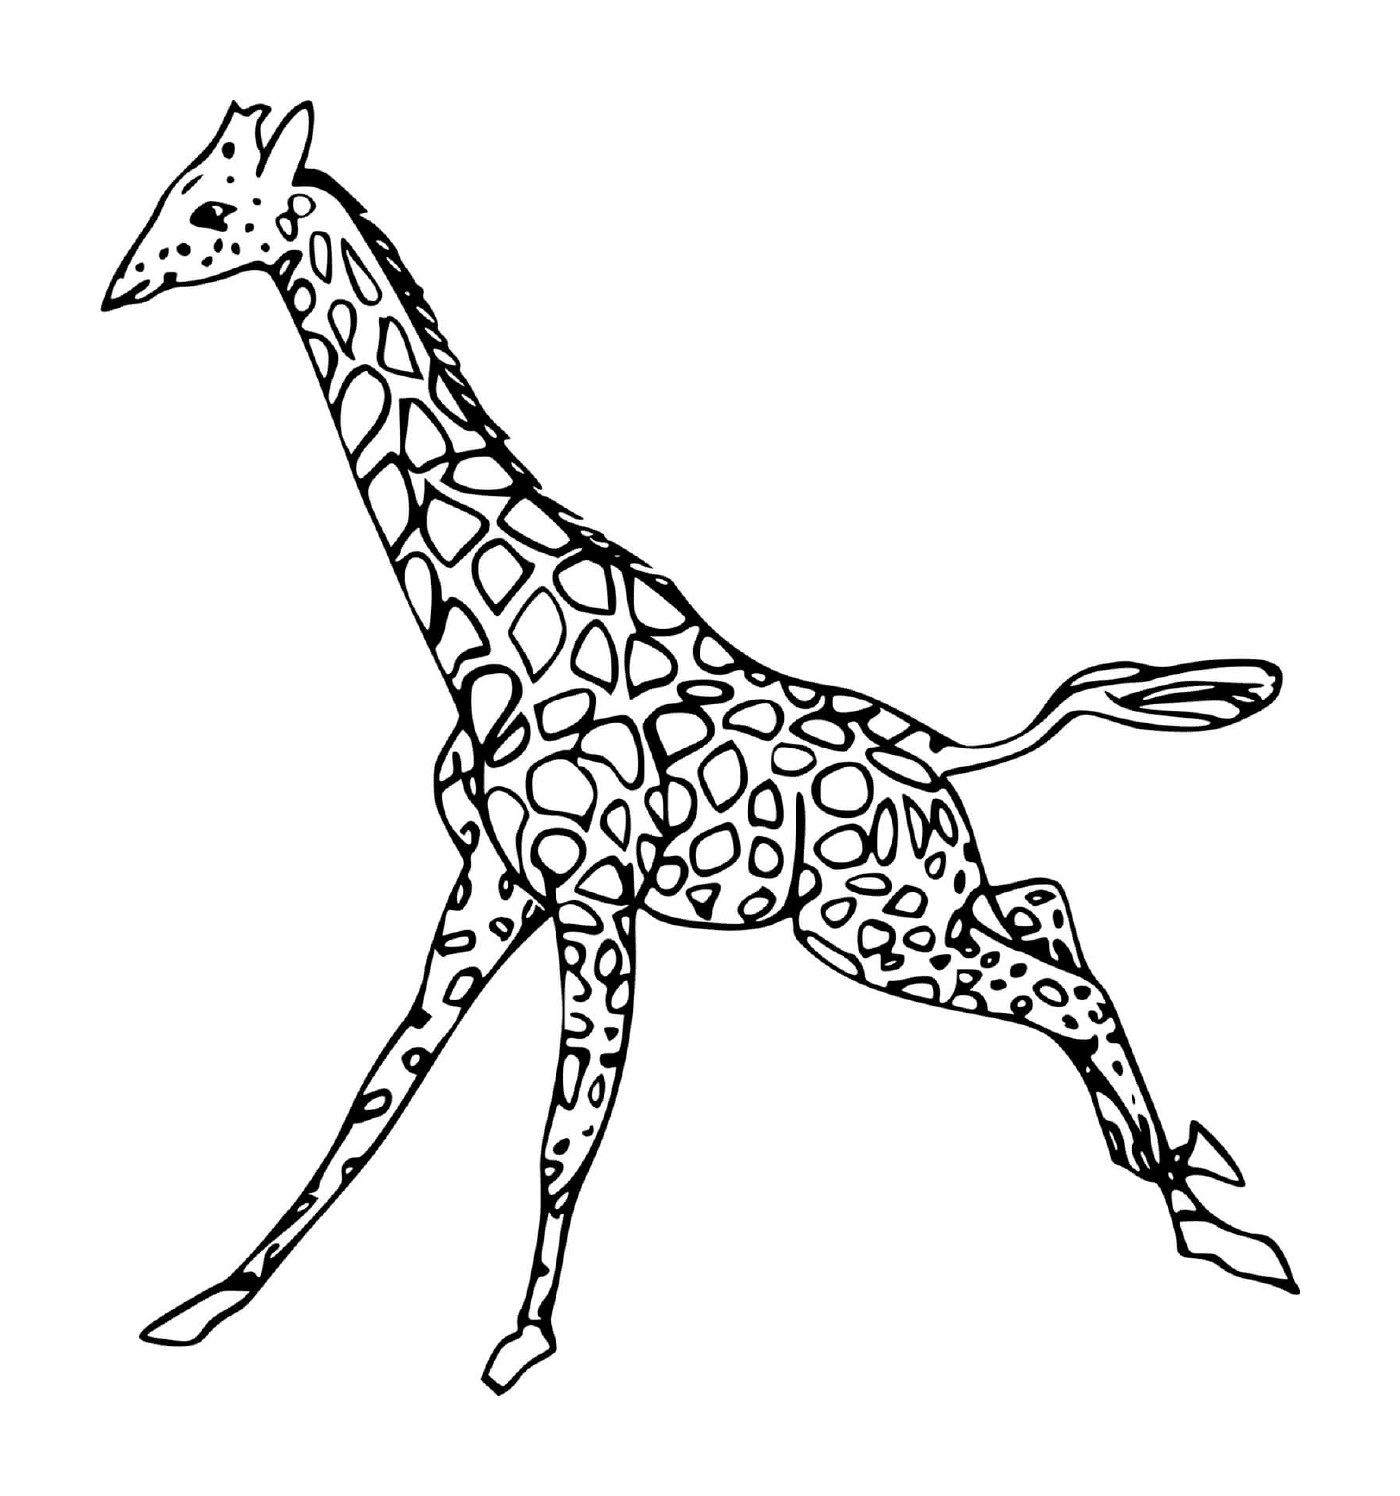  Girafe läuft 